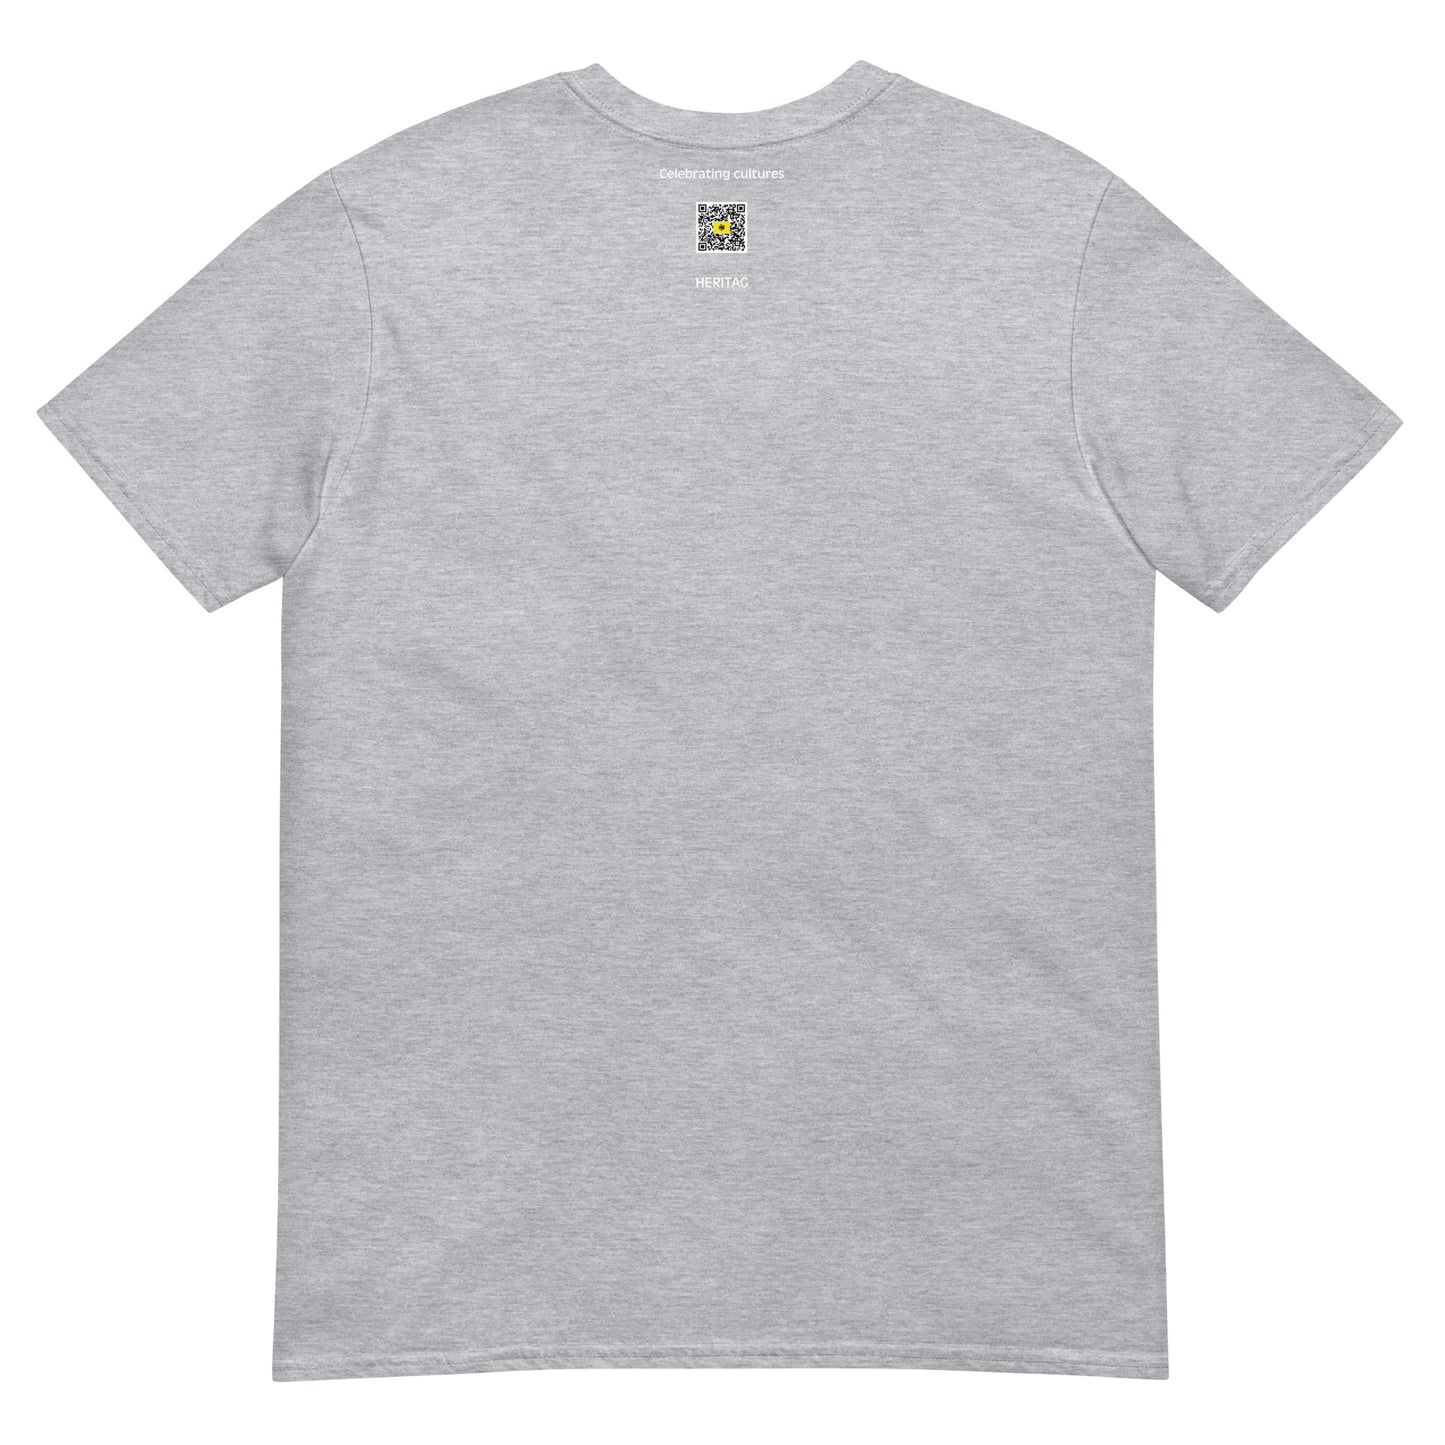 Indonesia - Kingdom of Gowa (1350-1945) | Historical Flag Short-Sleeve Unisex T-Shirt